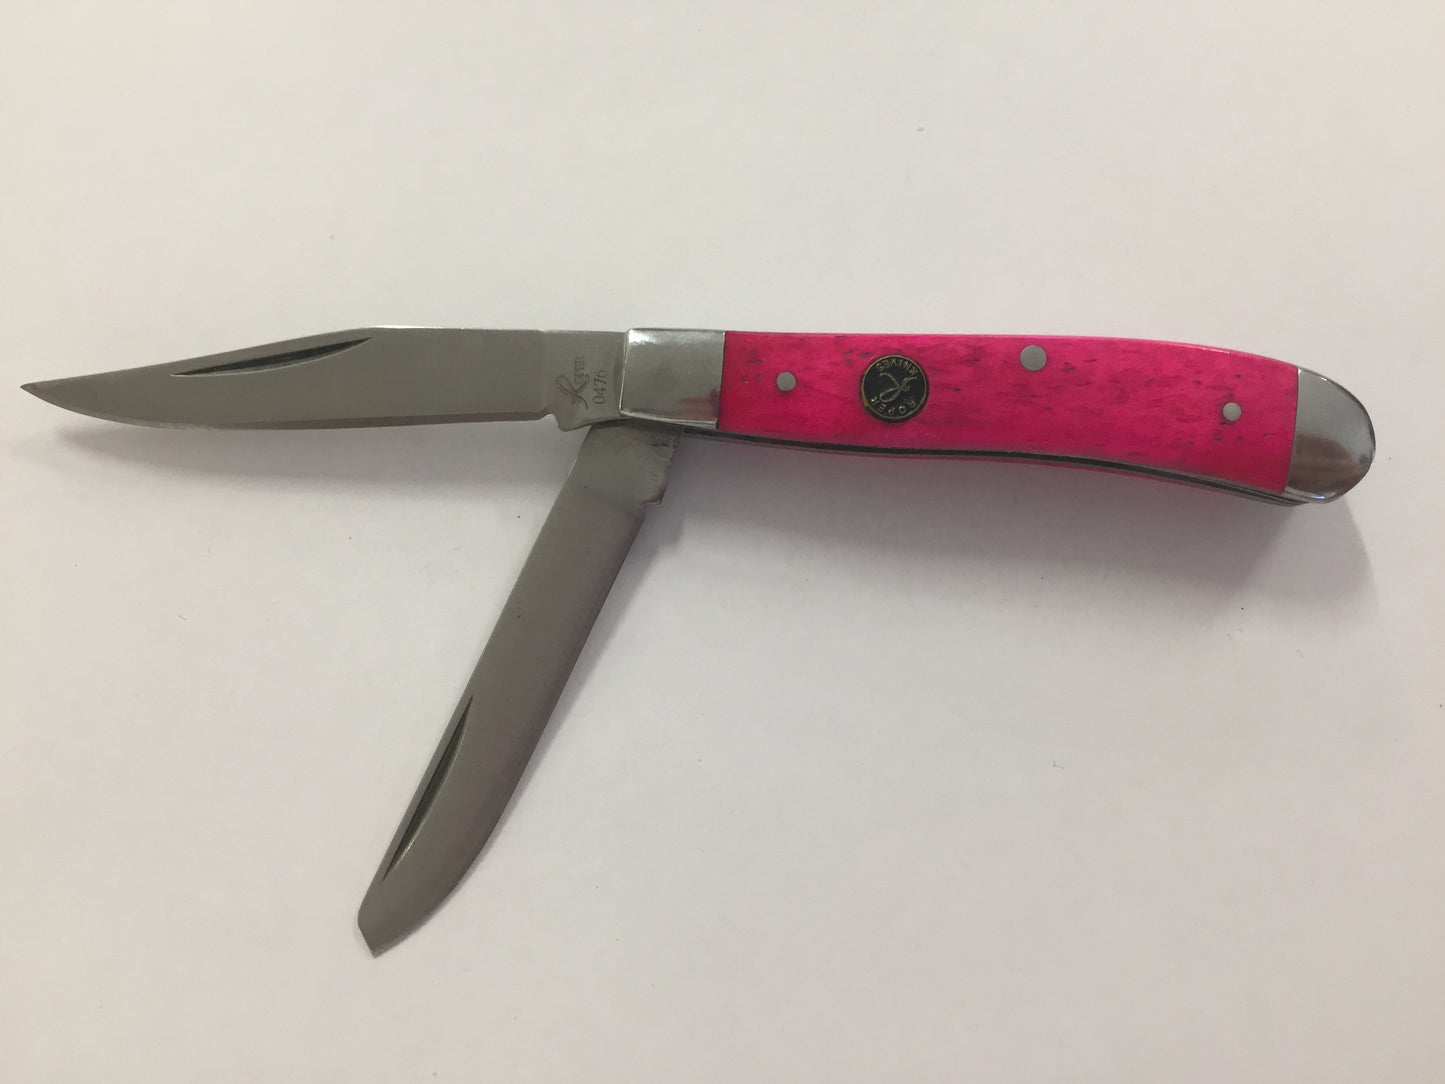 Roper Knives Pink Sky 2 Blade Pocket Knife